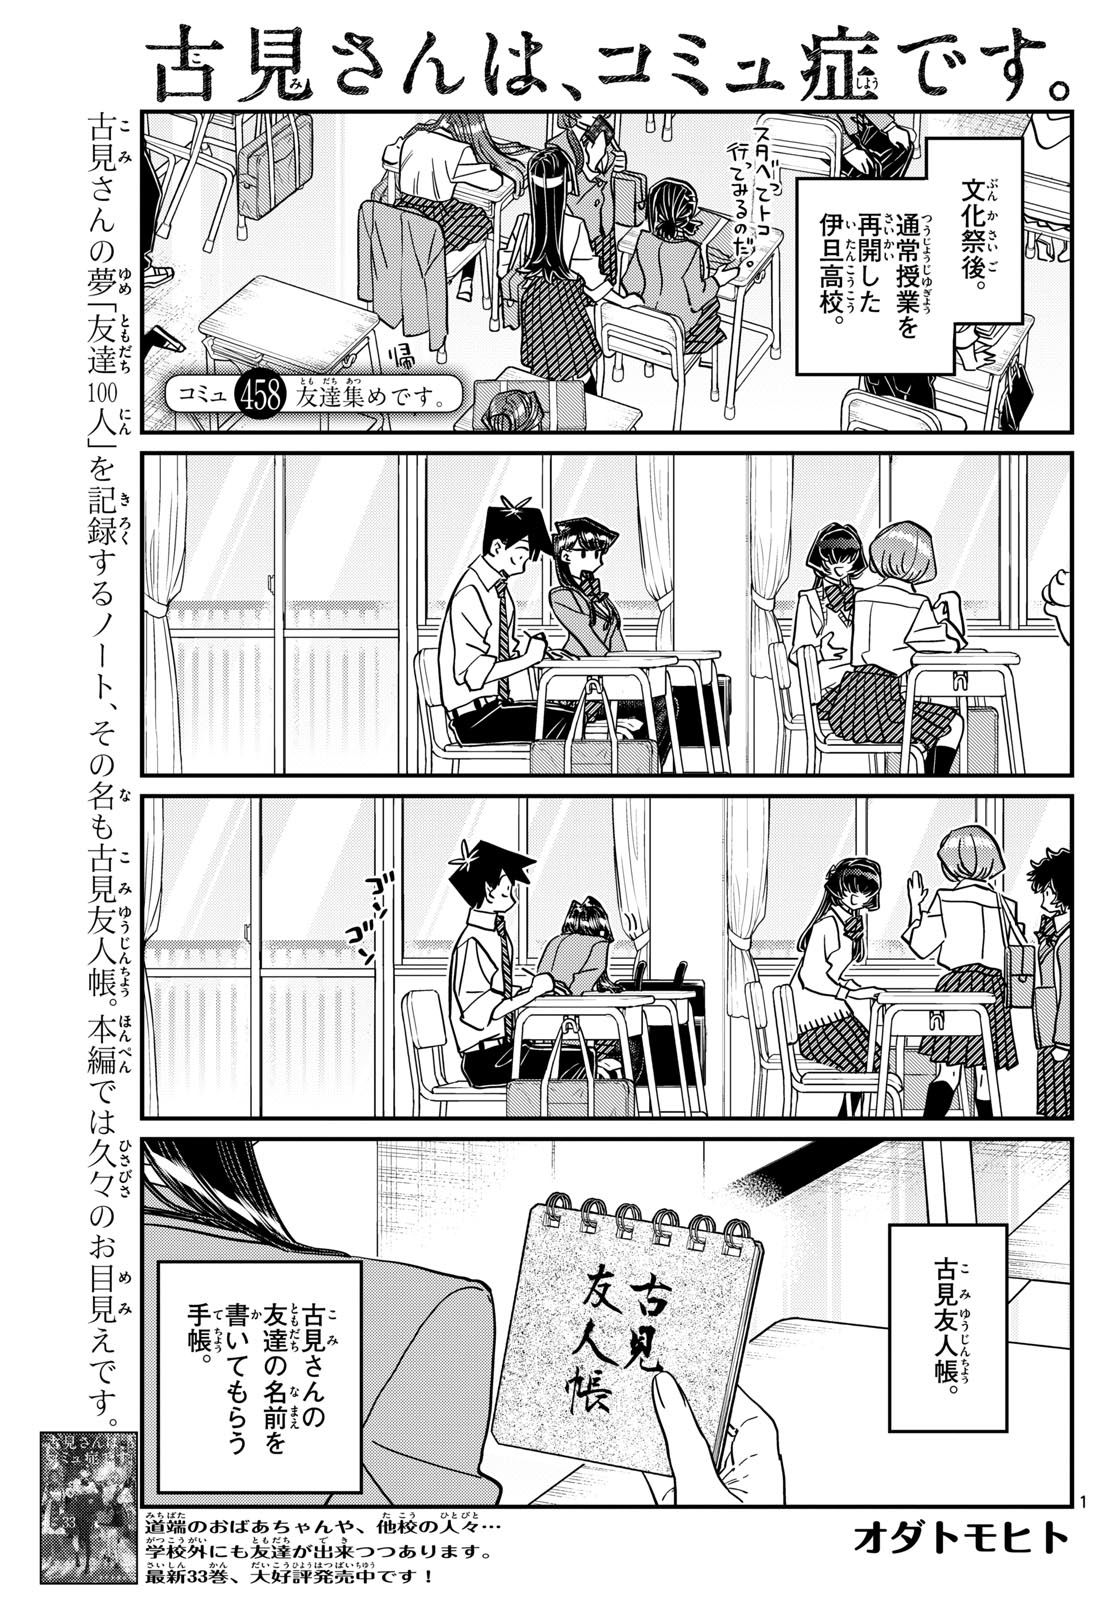 Komi-san wa Komyushou Desu - Chapter 458 - Page 1